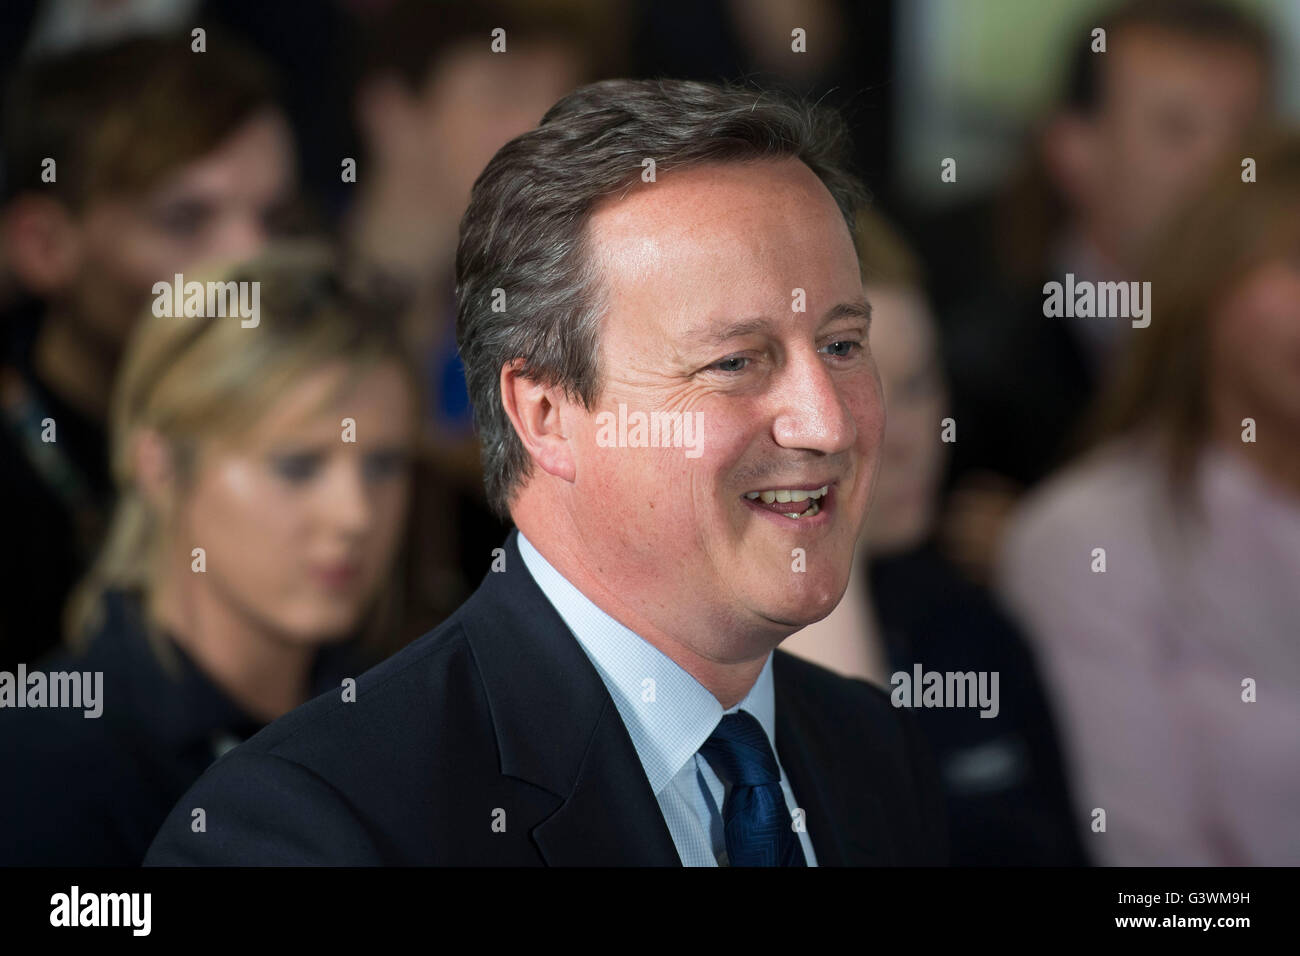 David Cameron, Primer Ministro del Reino Unido, y el líder del Partido Conservador, habla durante un debate sobre la Unión Europea. Foto de stock